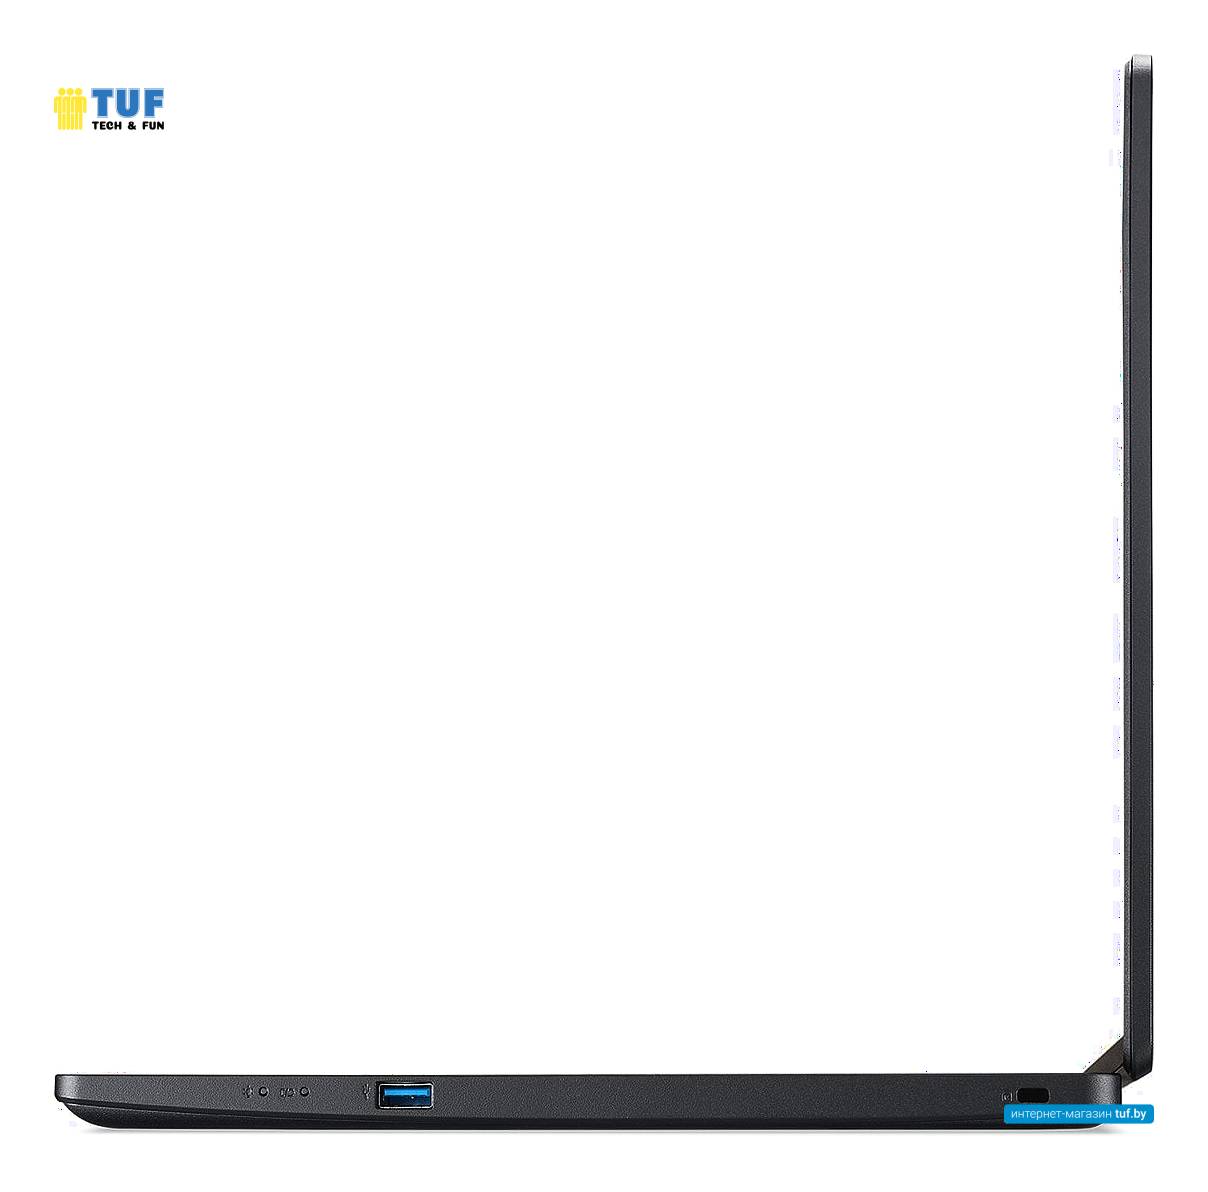 Ноутбук Acer TravelMate P2 TMP215-52-529S NX.VLLER.00G